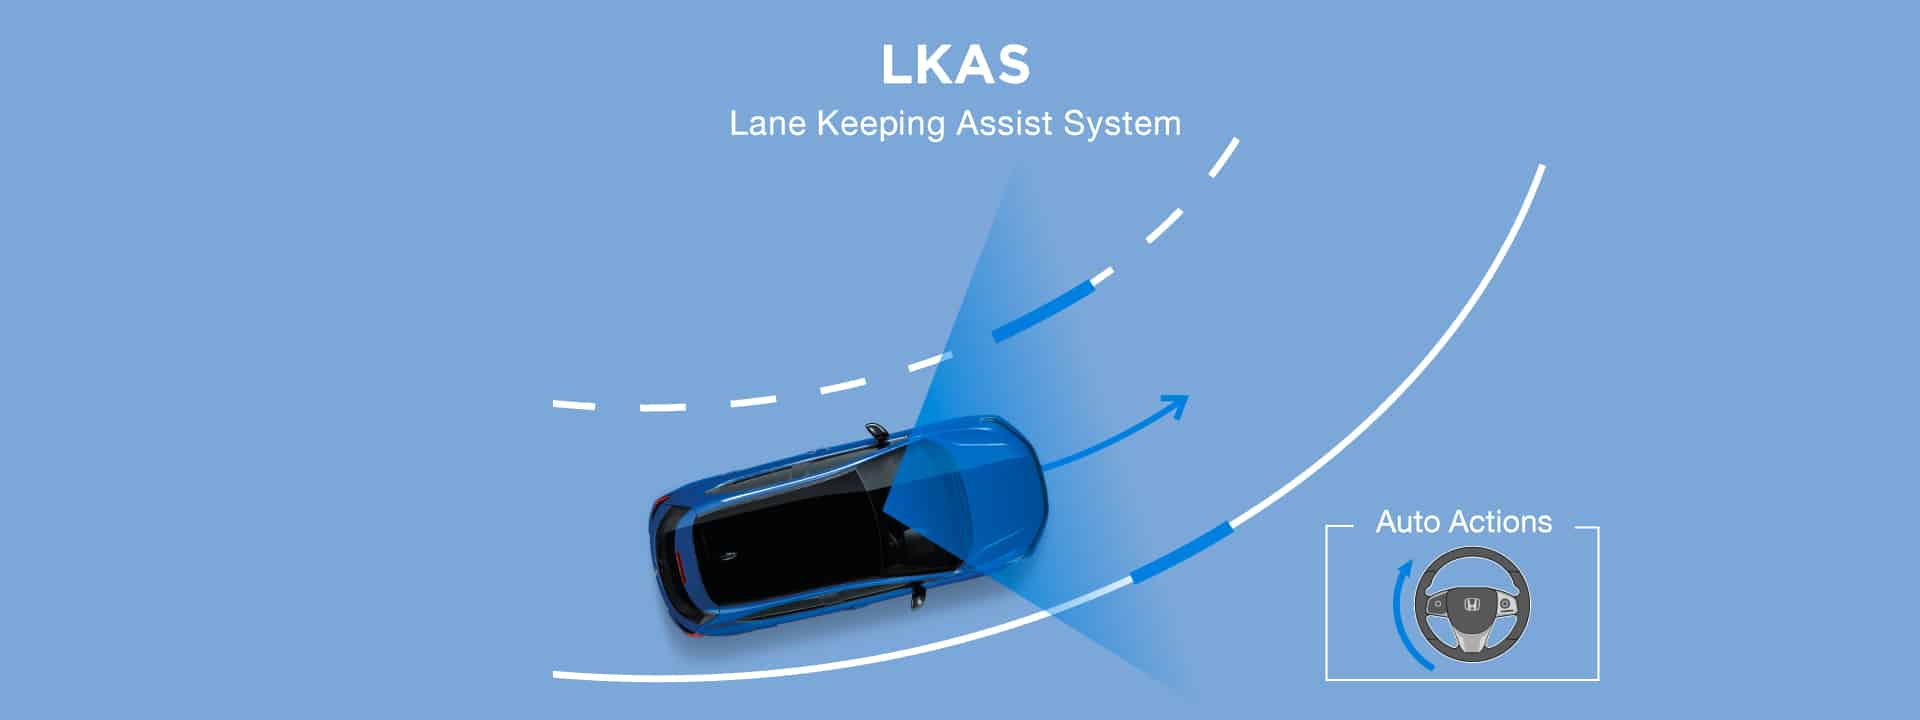 LKAS ระบบช่วยควบคุมรถให้อยู่ในเลน ระบบจะช่วยเพิ่มแรงหน่วงพวงมาลัยช่วยให้ผู้ขับลดอาการเหนื่อยล้า